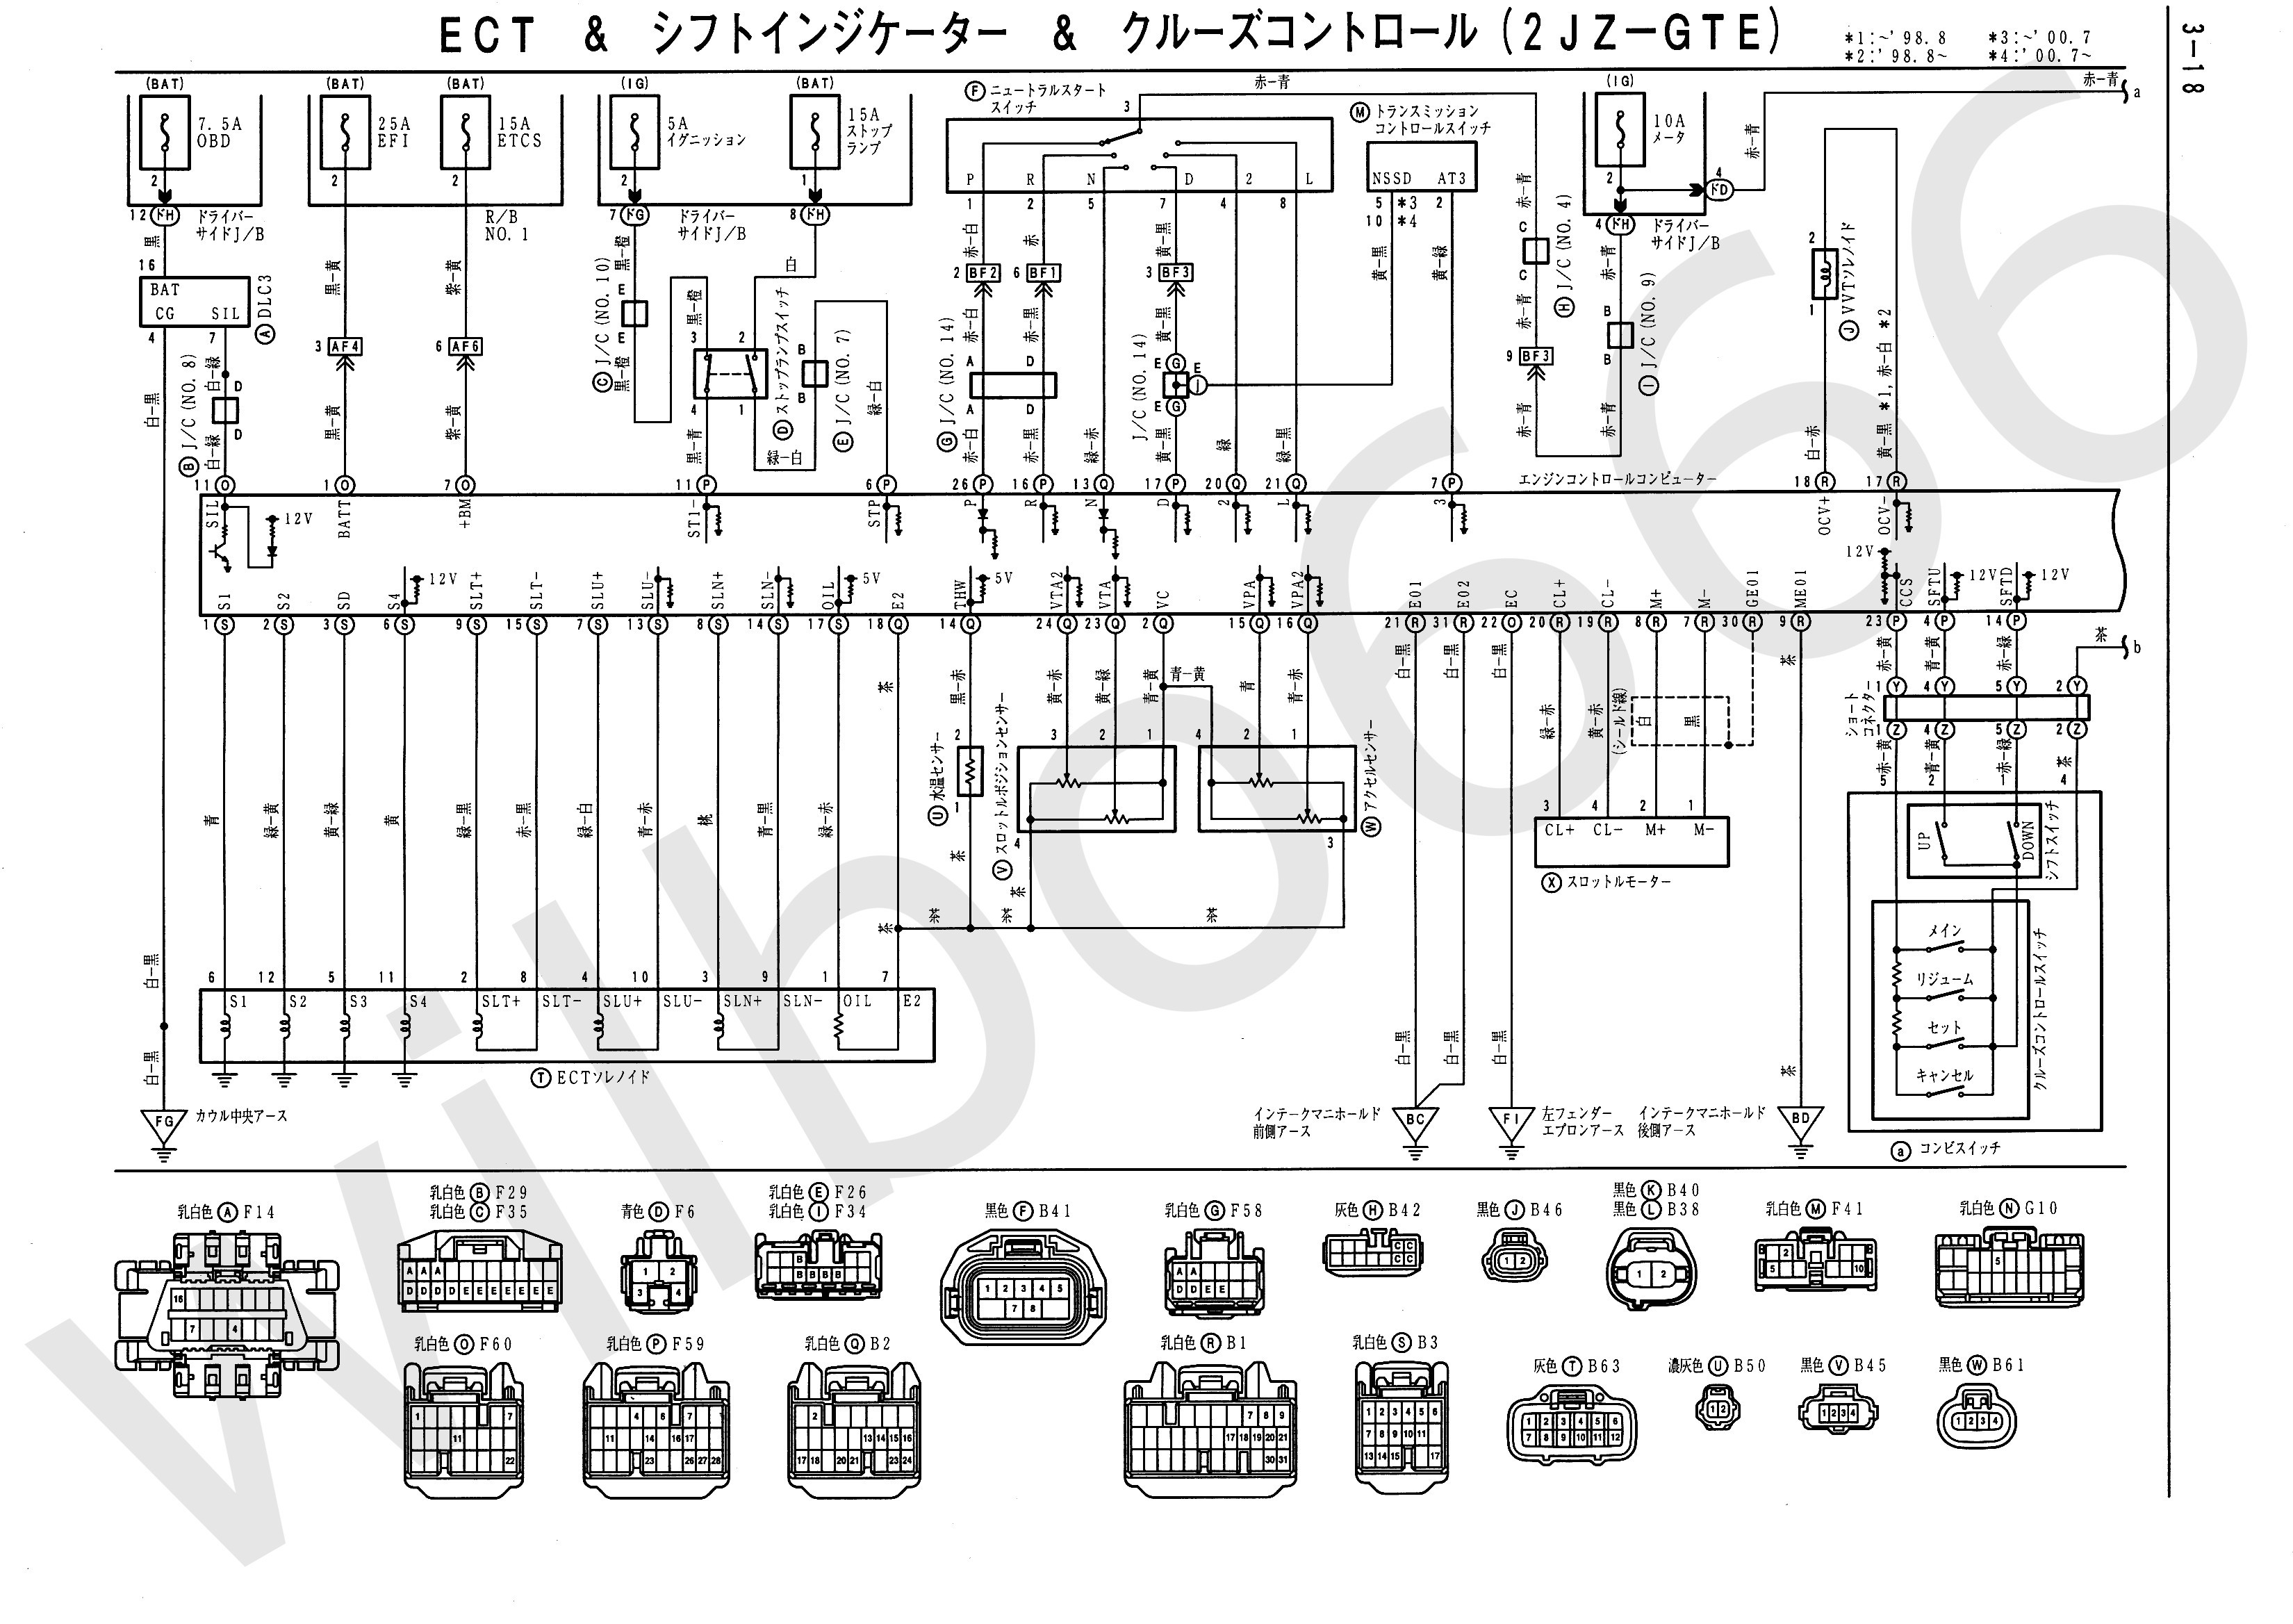 Engine Schematic Diagram Best Obd2 Wiring Diagram Diagram Of Engine Schematic Diagram